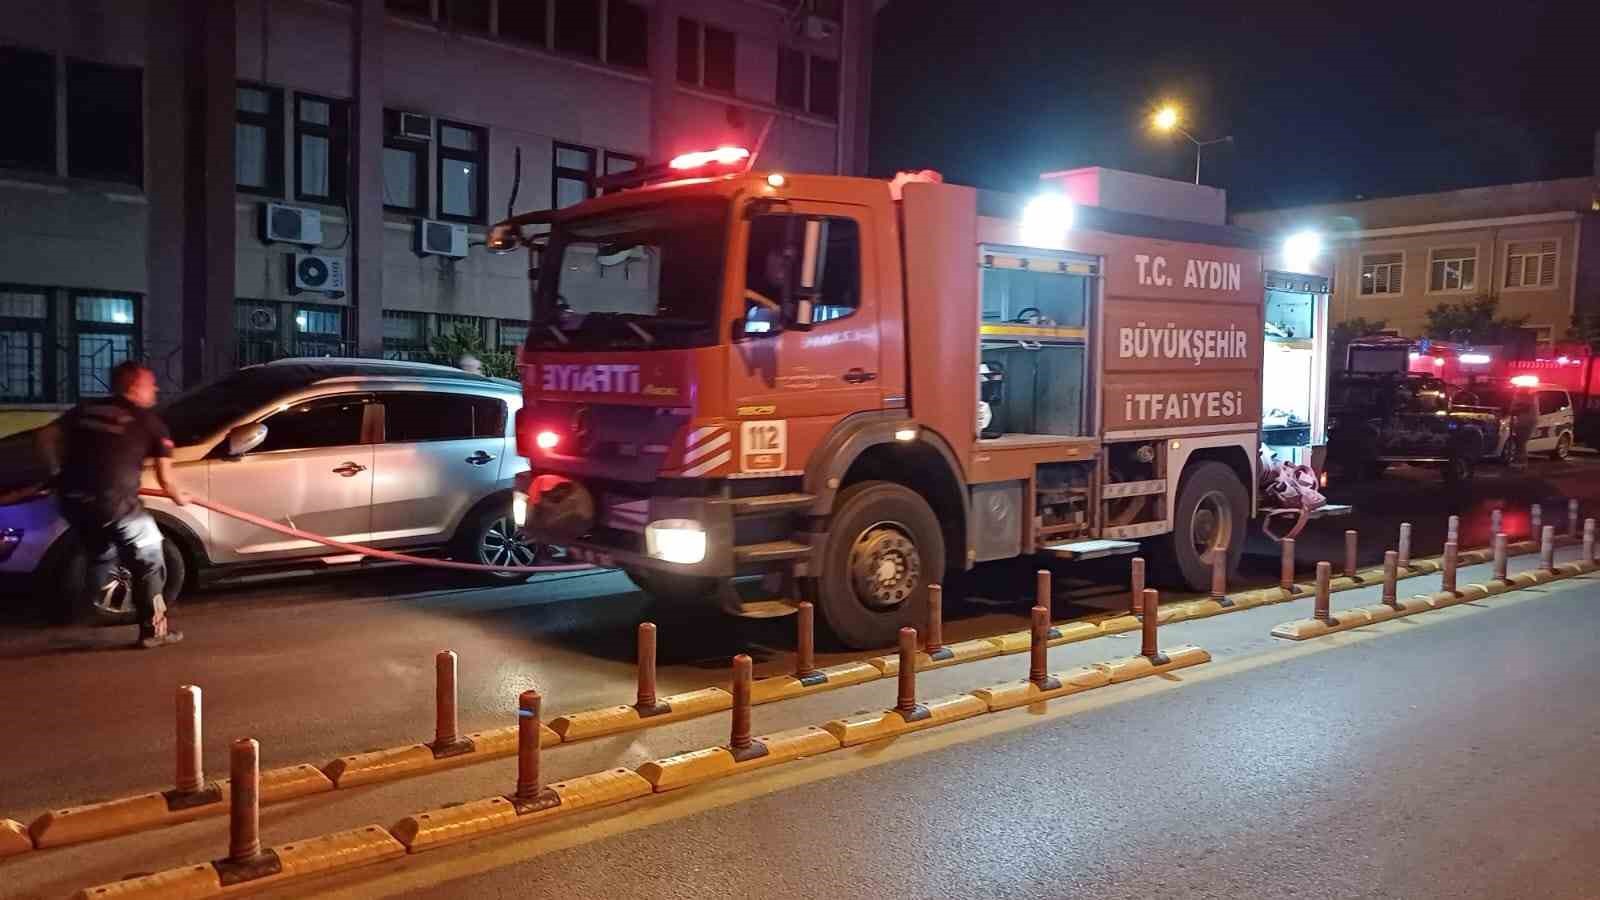 Aydın Devlet Hastanesi’nde yangın paniği